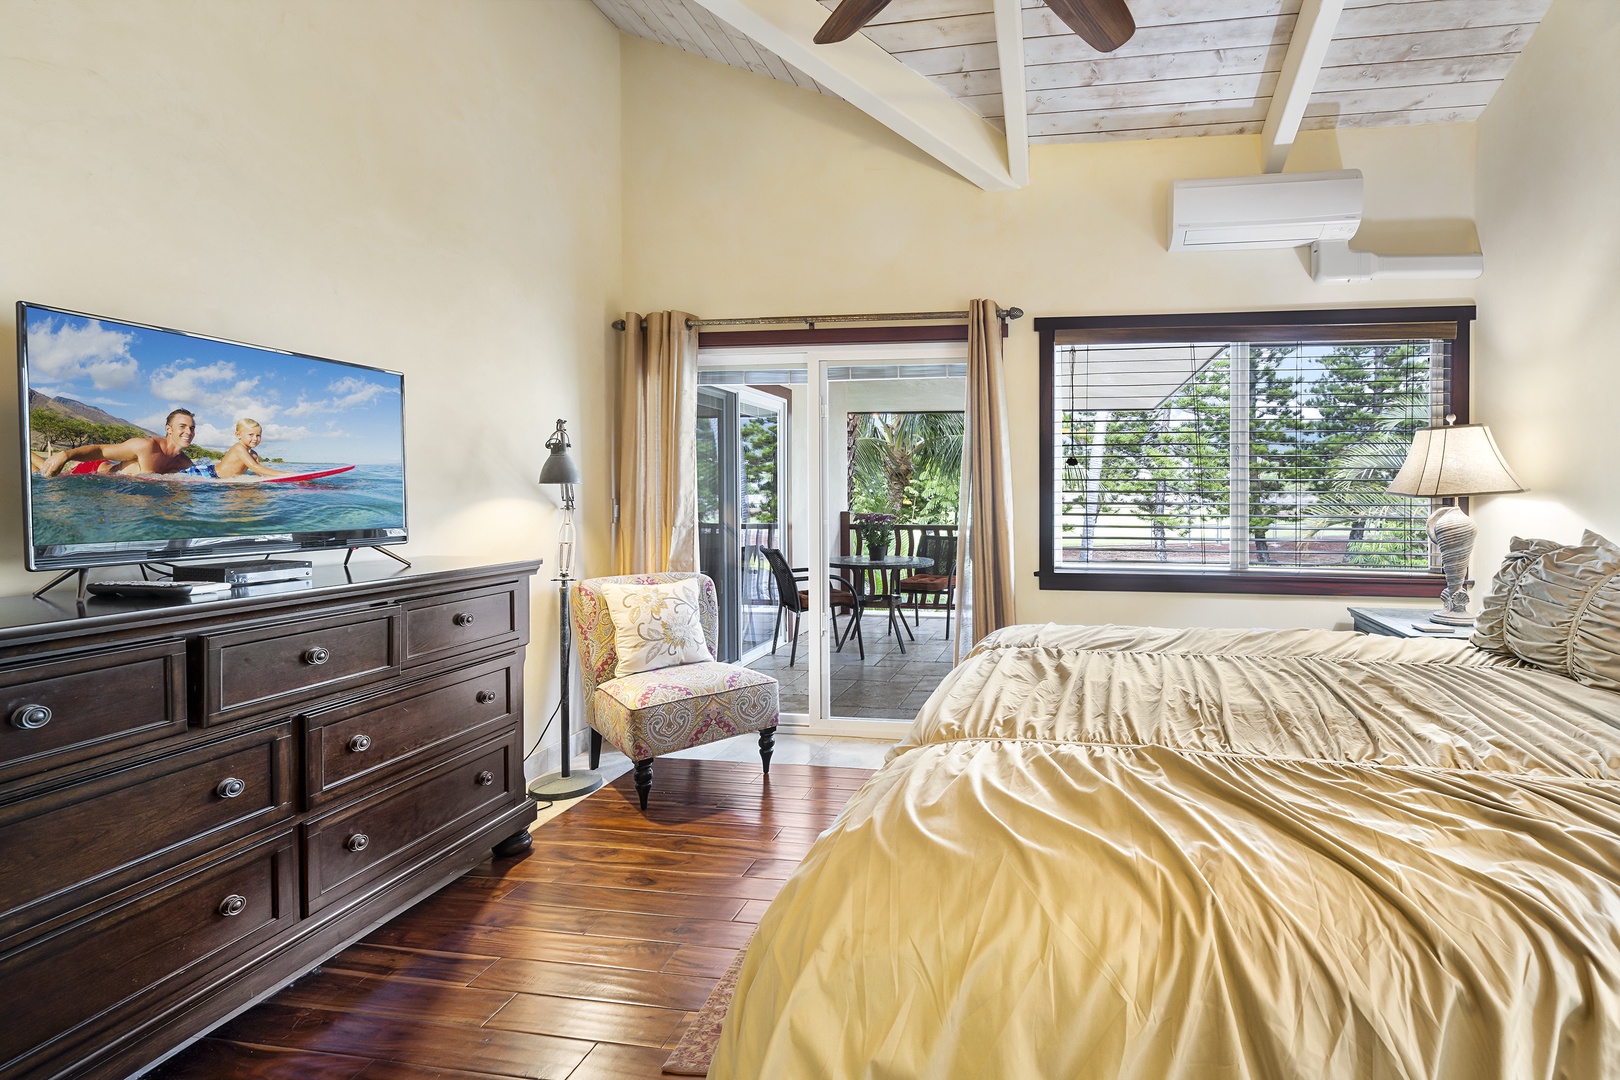 Kailua Kona Vacation Rentals, Mermaid Cove - King bed, A/C, Lanai Access, and TV